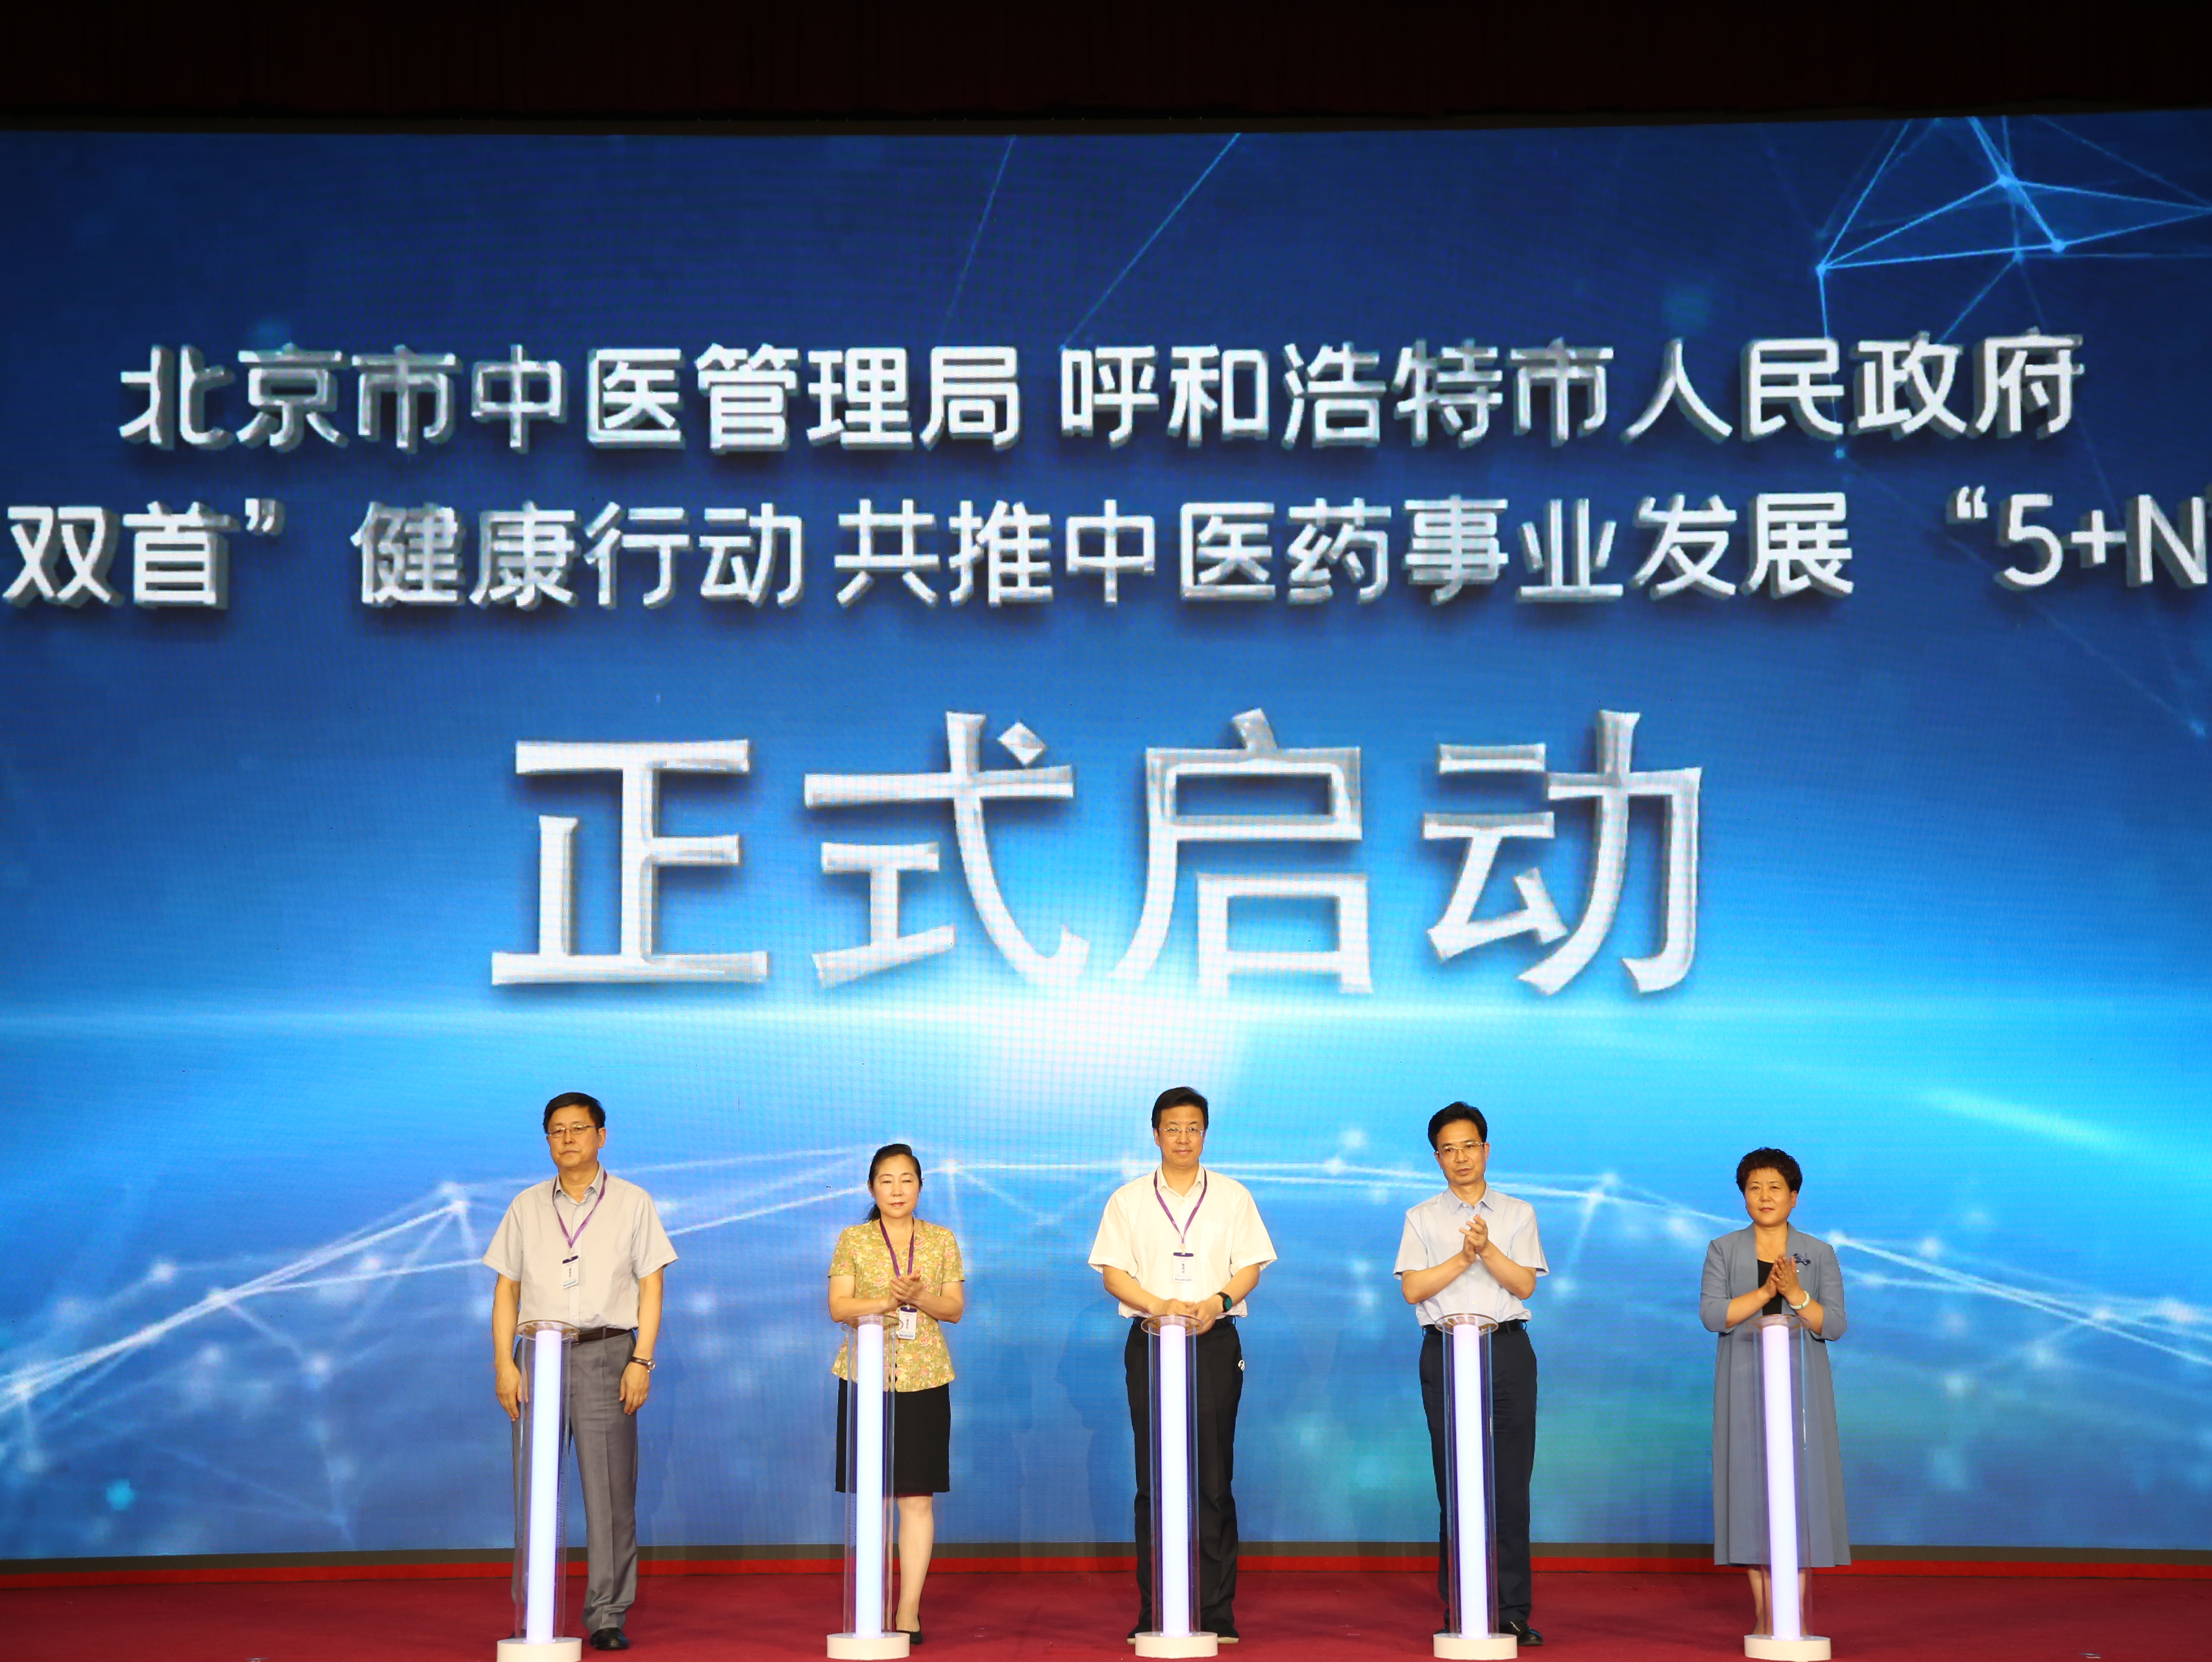 北京市中医管理局与呼和浩特市人民政府开展“双首”健康行动 共推中（蒙）医药事业发展“5+N”项目启动